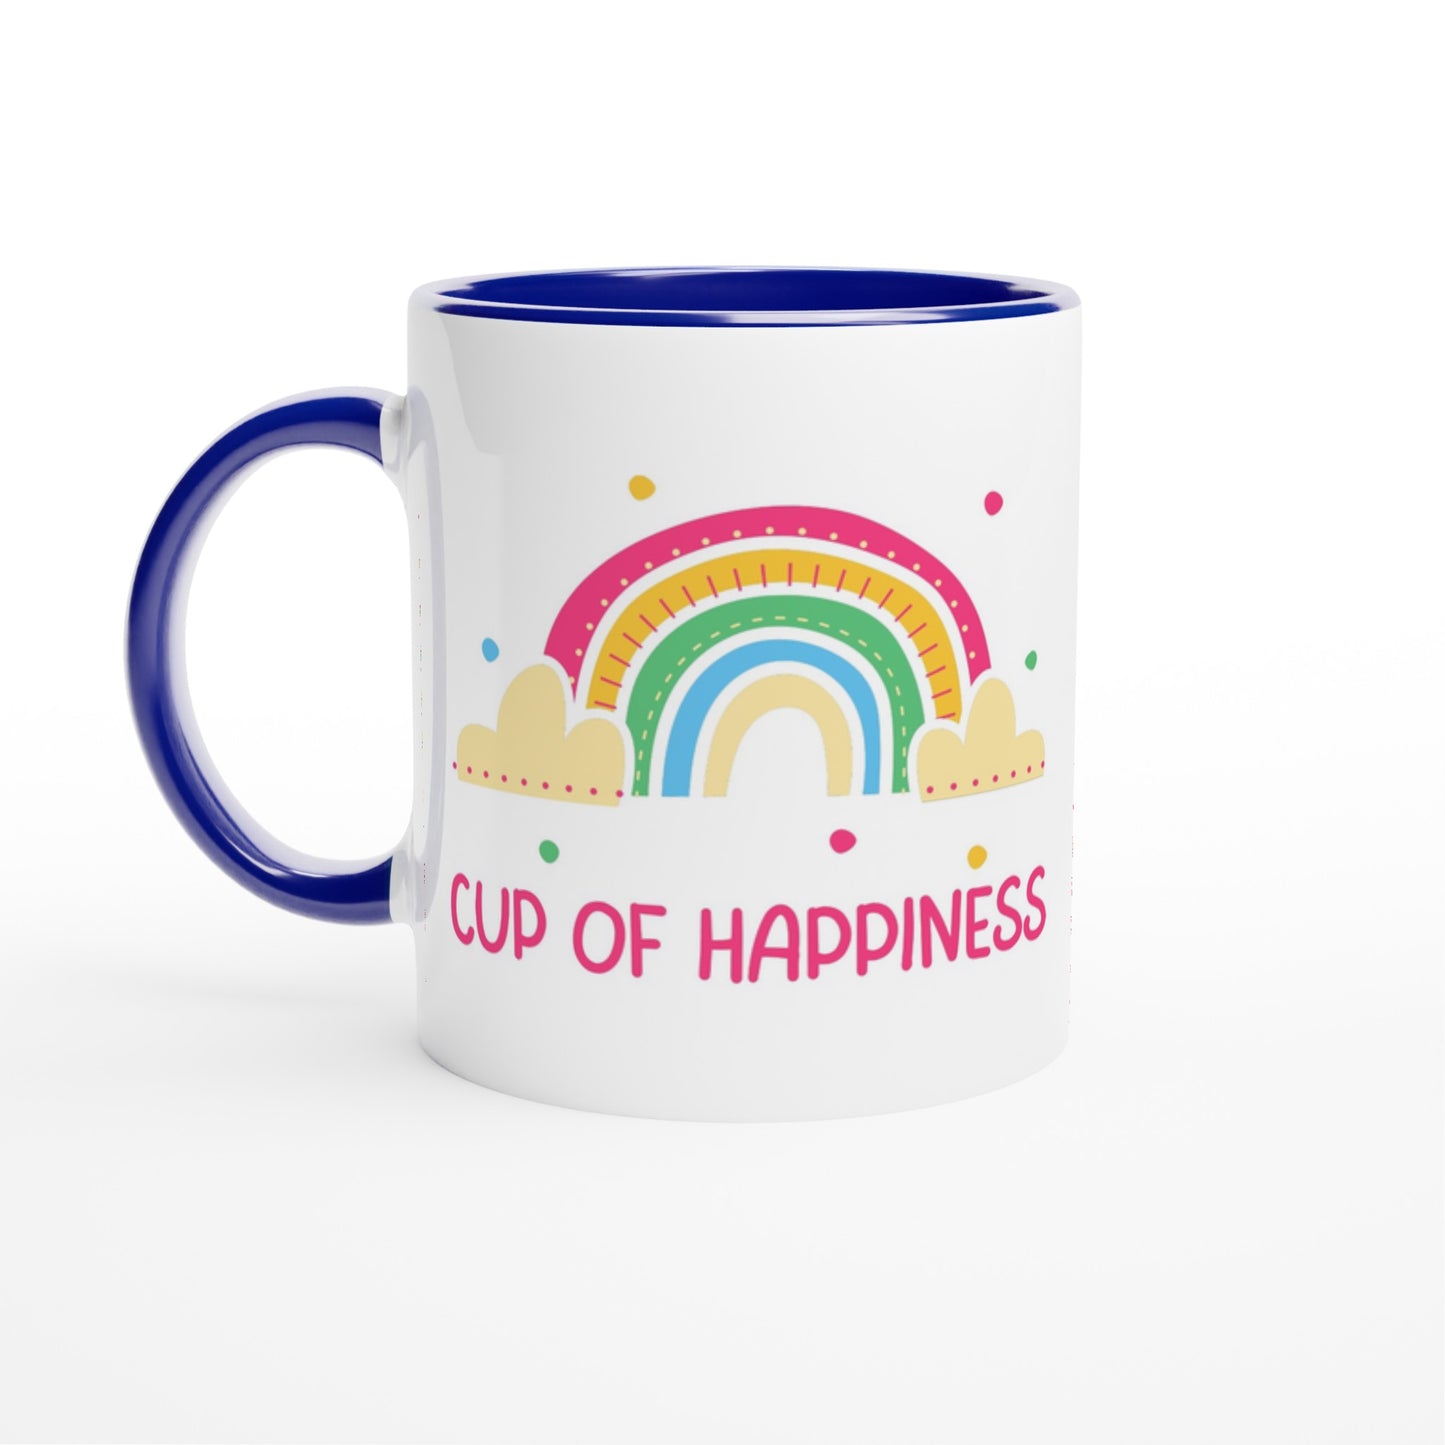 Cup Of Happiness - White 11oz Ceramic Mug with Colour Inside Ceramic Blue Colour 11oz Mug positivity